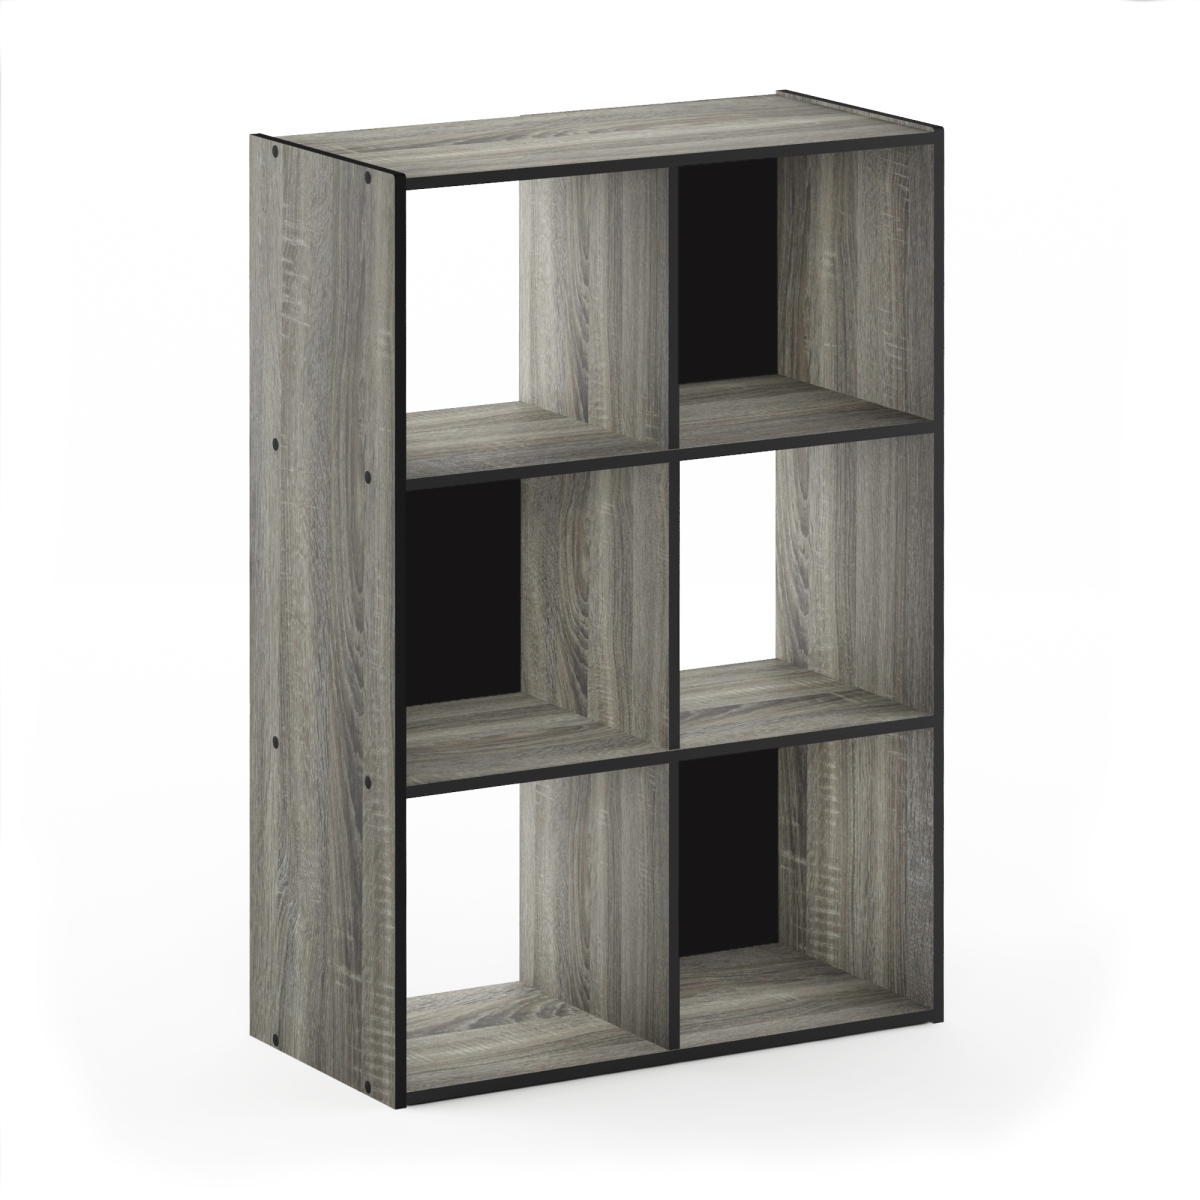 18053gyw 3 X 2 In. Pelli Cubic Storage Cabinet, French Oak Grey & Black